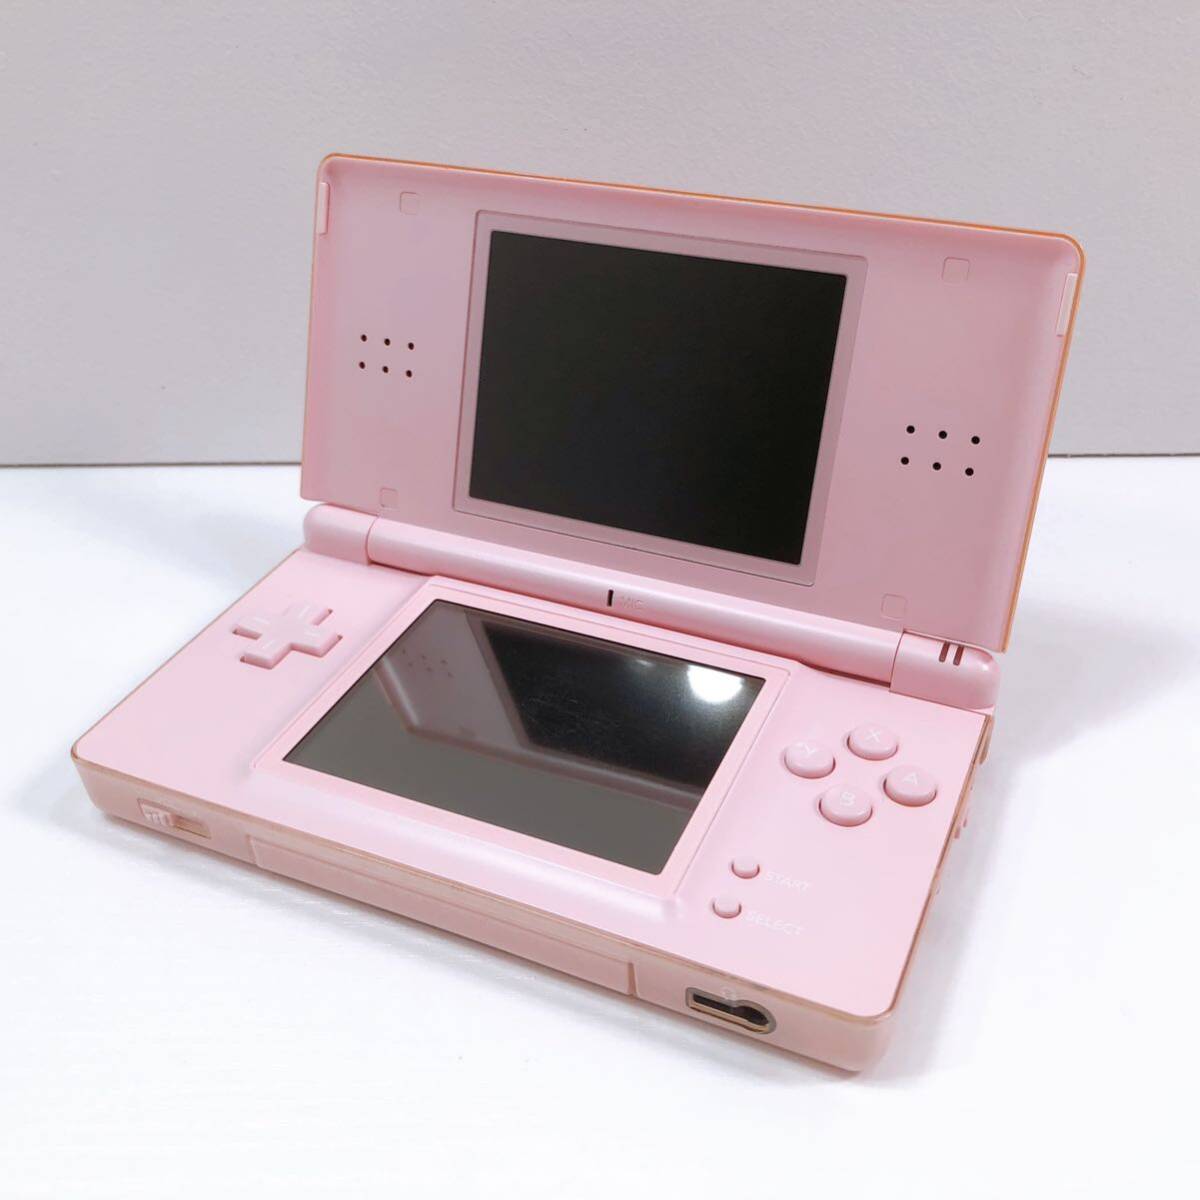 317【中古】Nintendo DS Lite 本体 USG-001 ピンク ニンテンドー DS ライト 任天堂 タッチペンなし 動作確認 初期化済み 現状品の画像1